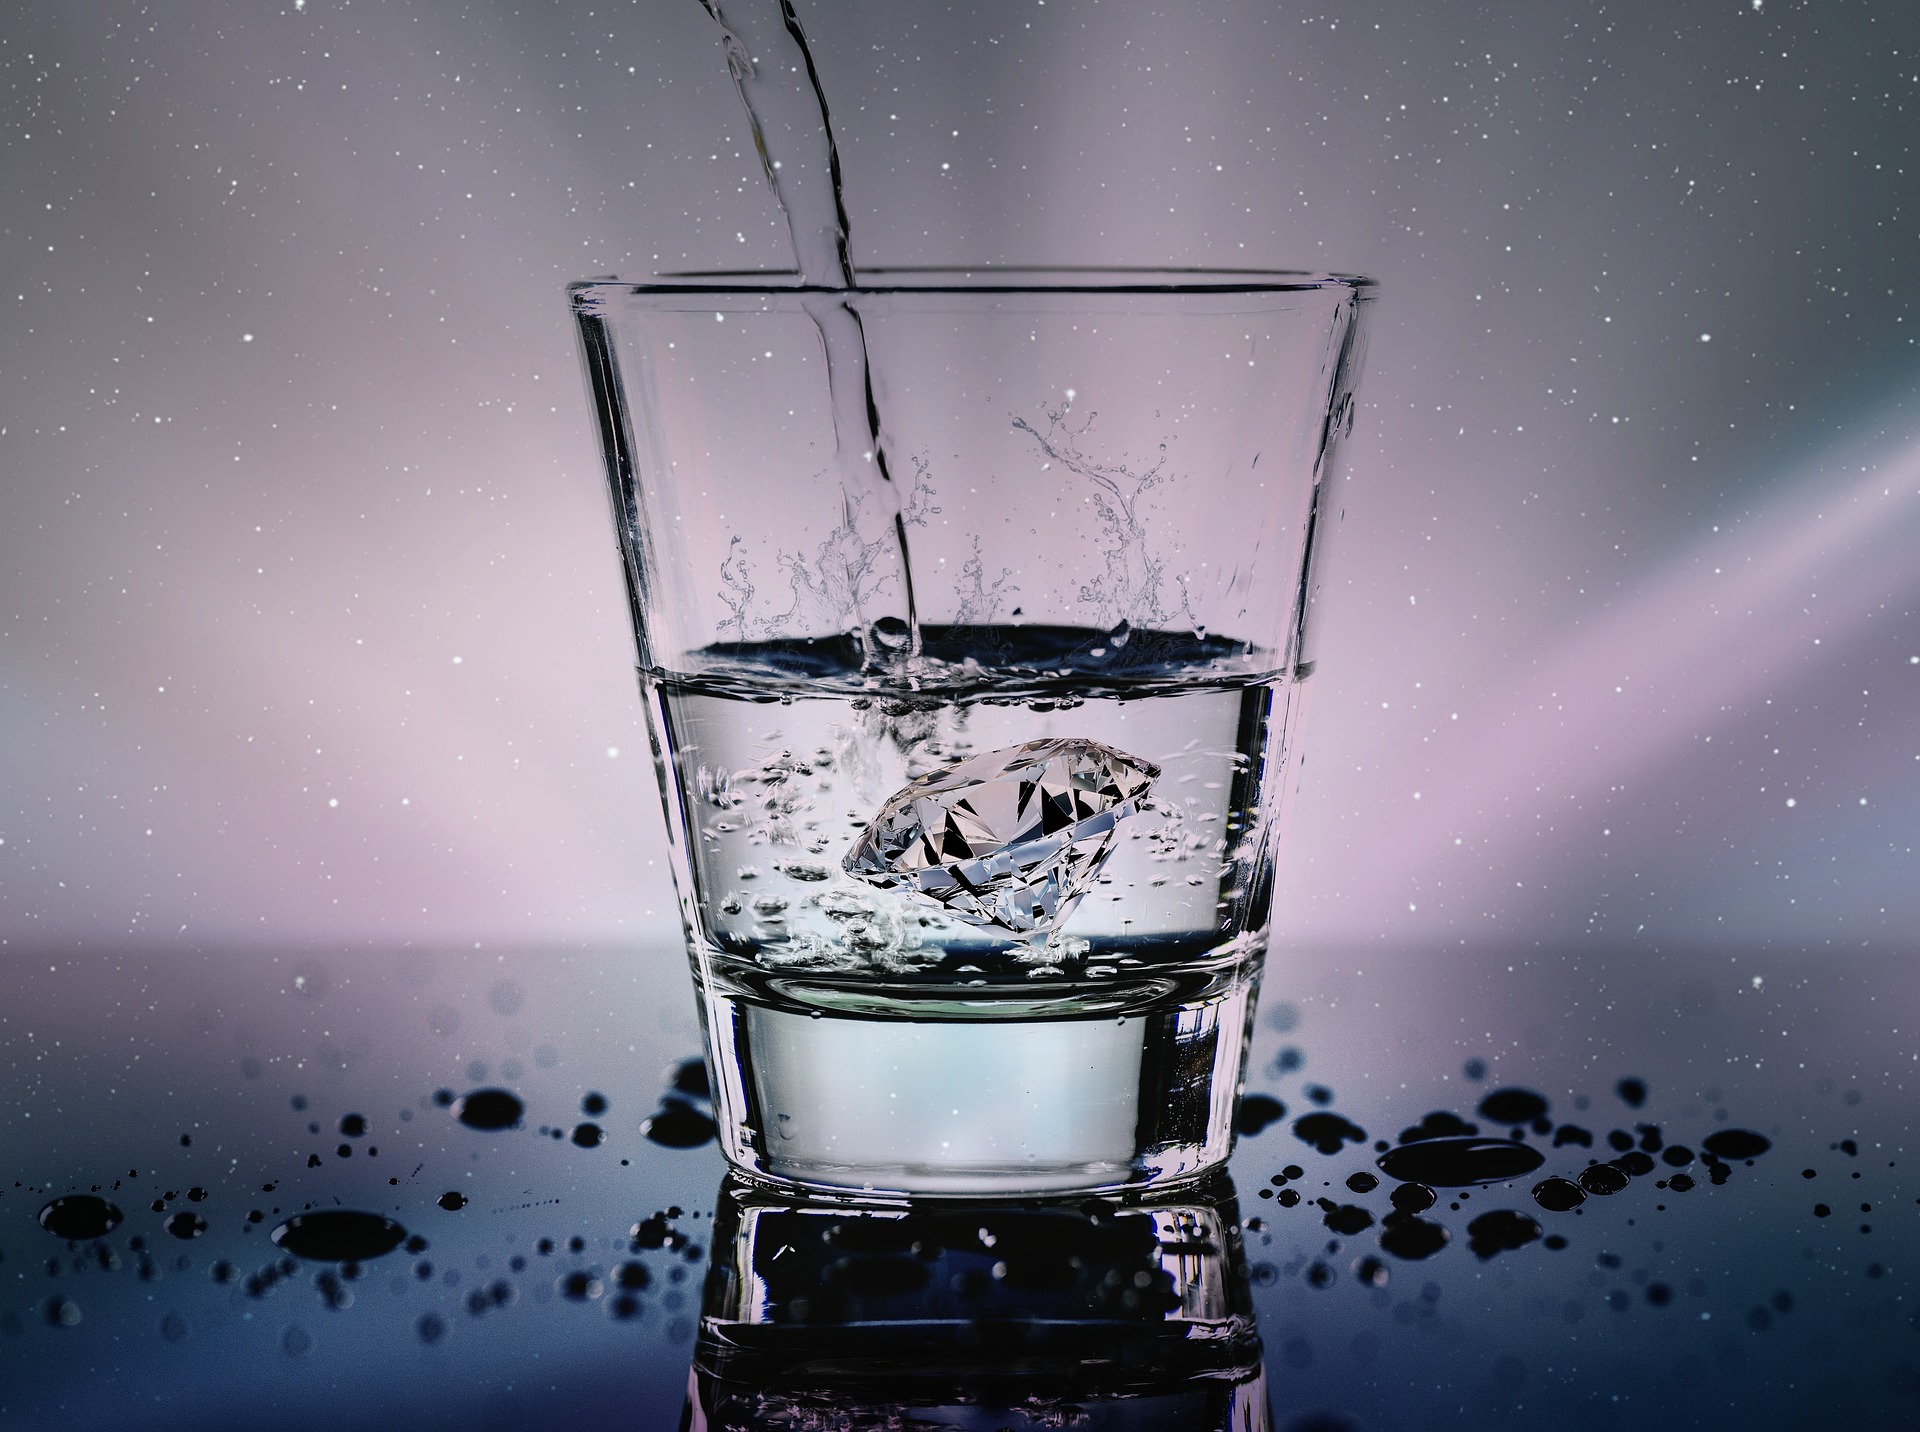 Vatten hälls i ett glas